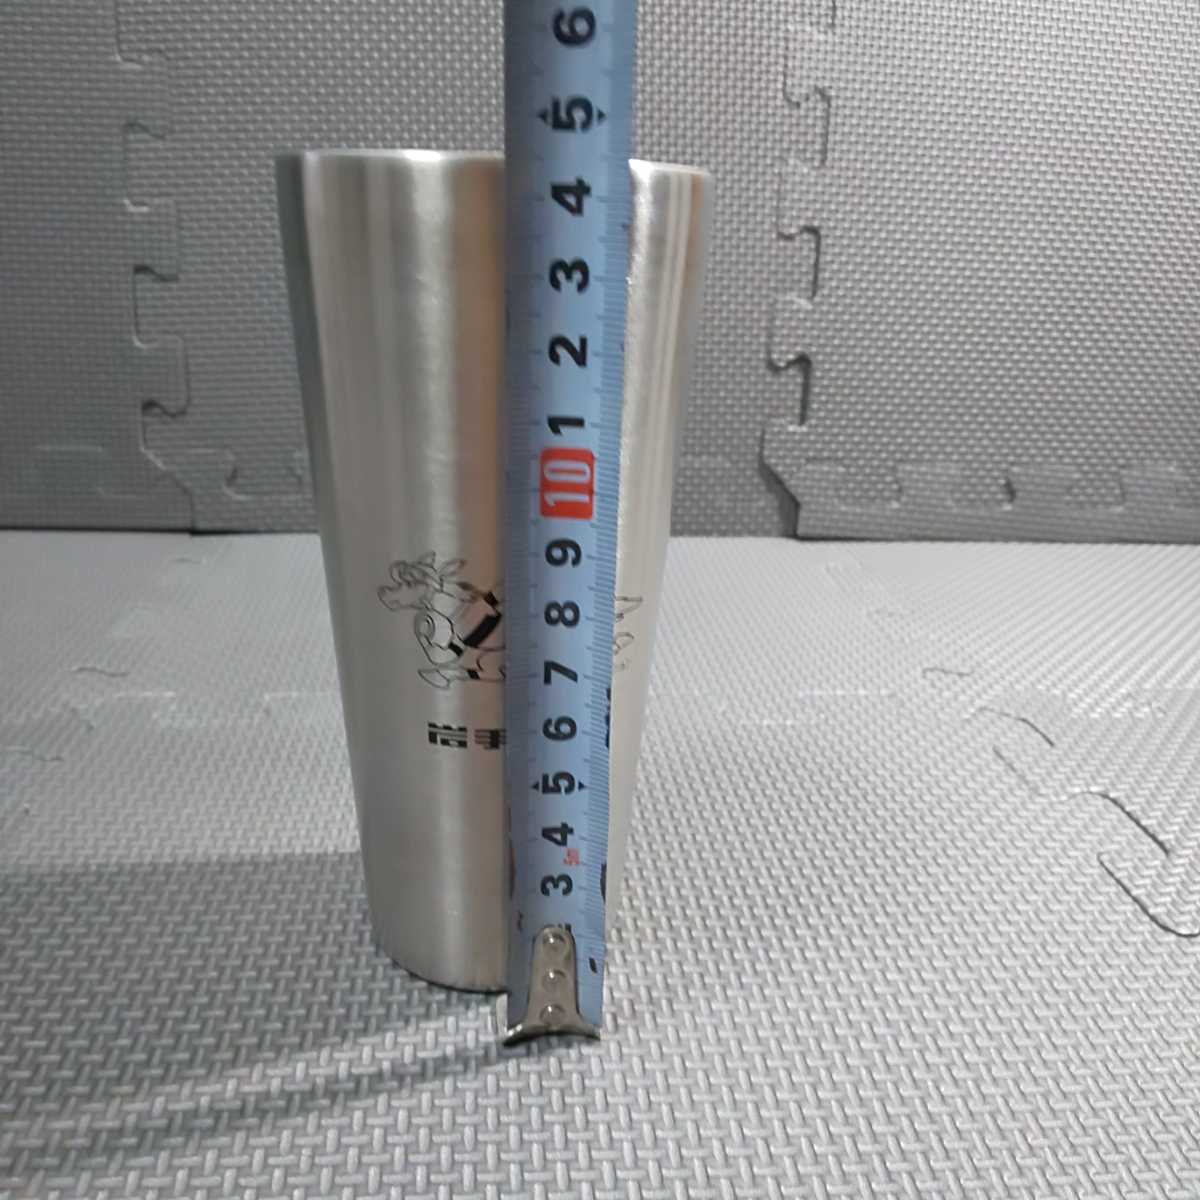  Iwate скачки × Thermos [ высокий стакан 1 шт ]THERMOS рука . production cup район скачки скачки нержавеющая сталь высокий стакан 